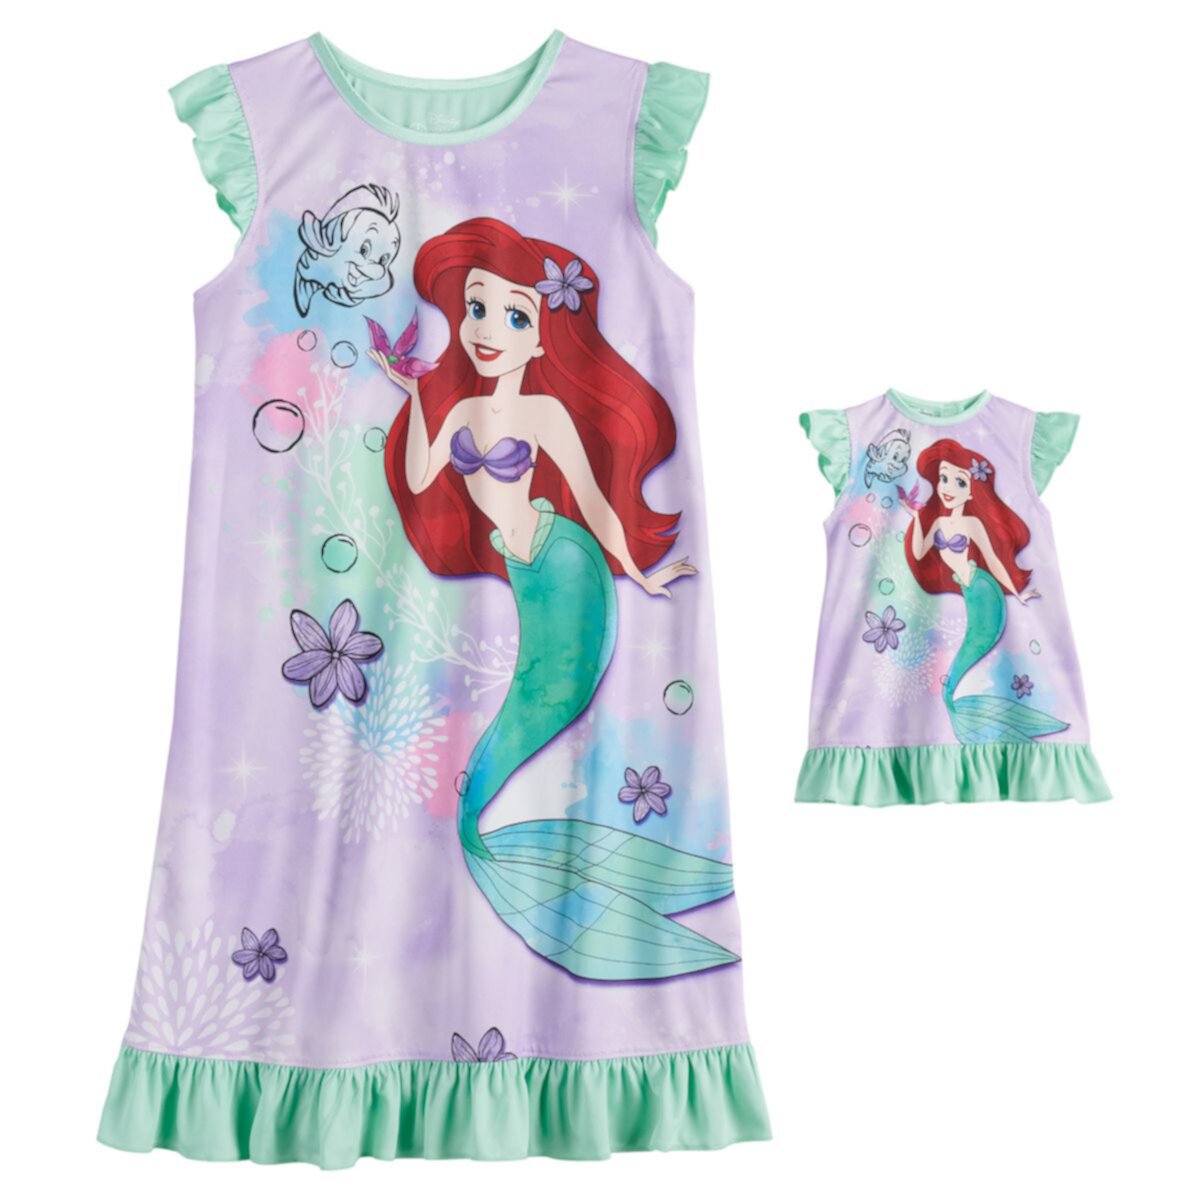 Disney's The Little Mermaid Ariel Girls 4-8 Ночная рубашка в общежитии и подходящее платье для куклы Licensed Character